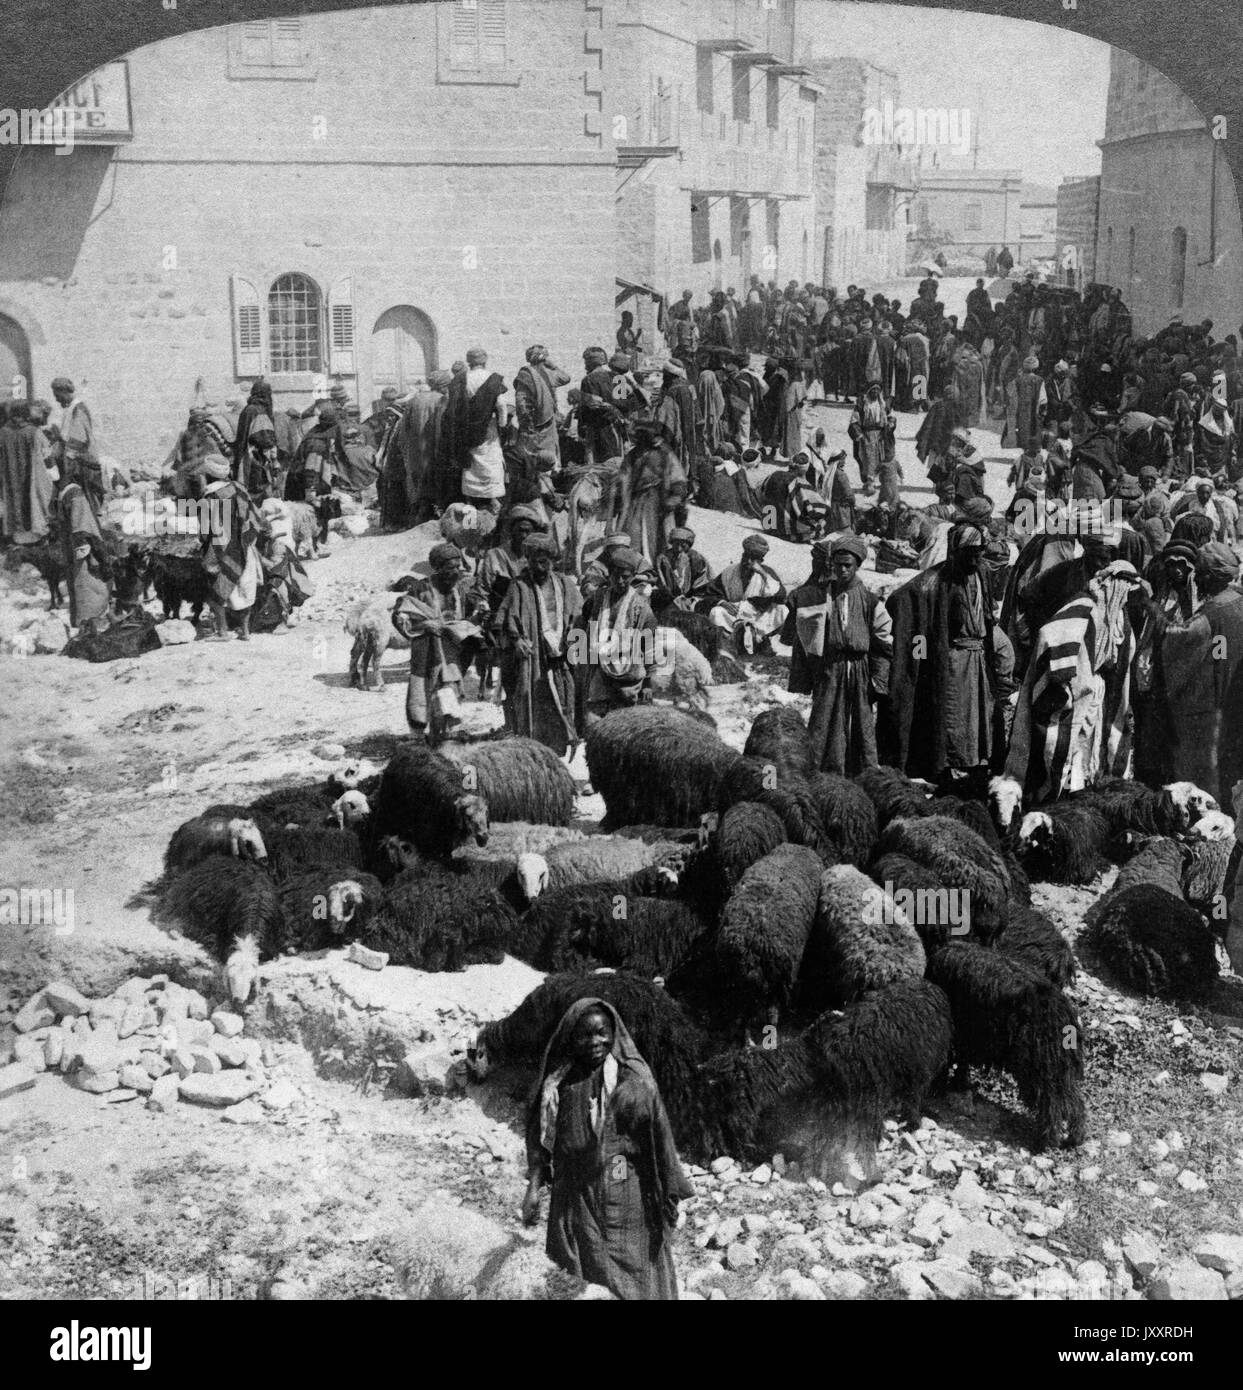 Lämmer werden zur Schlachtbank geführt beim islamischen Opferfest in Gerusalemme, Palästina 1904. Agnelli ha portato alla macellazione islamica settimana sacrificale, Gerusalemme e Palestina 1904. Foto Stock